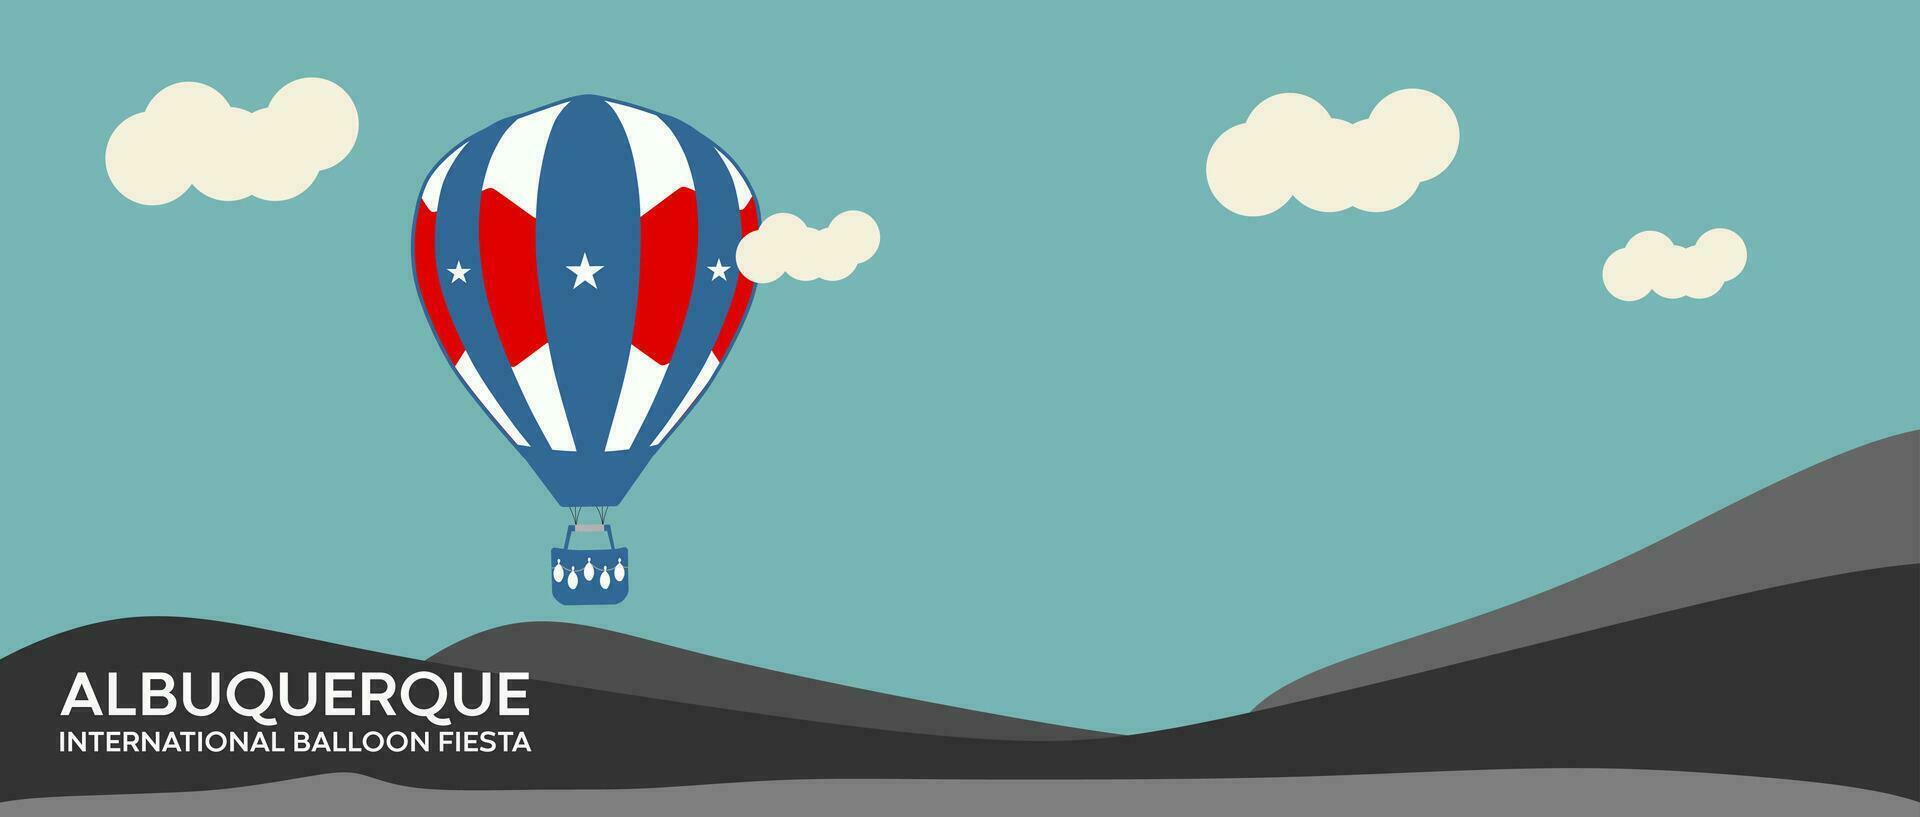 Albuquerque Internationale ballon feest vector